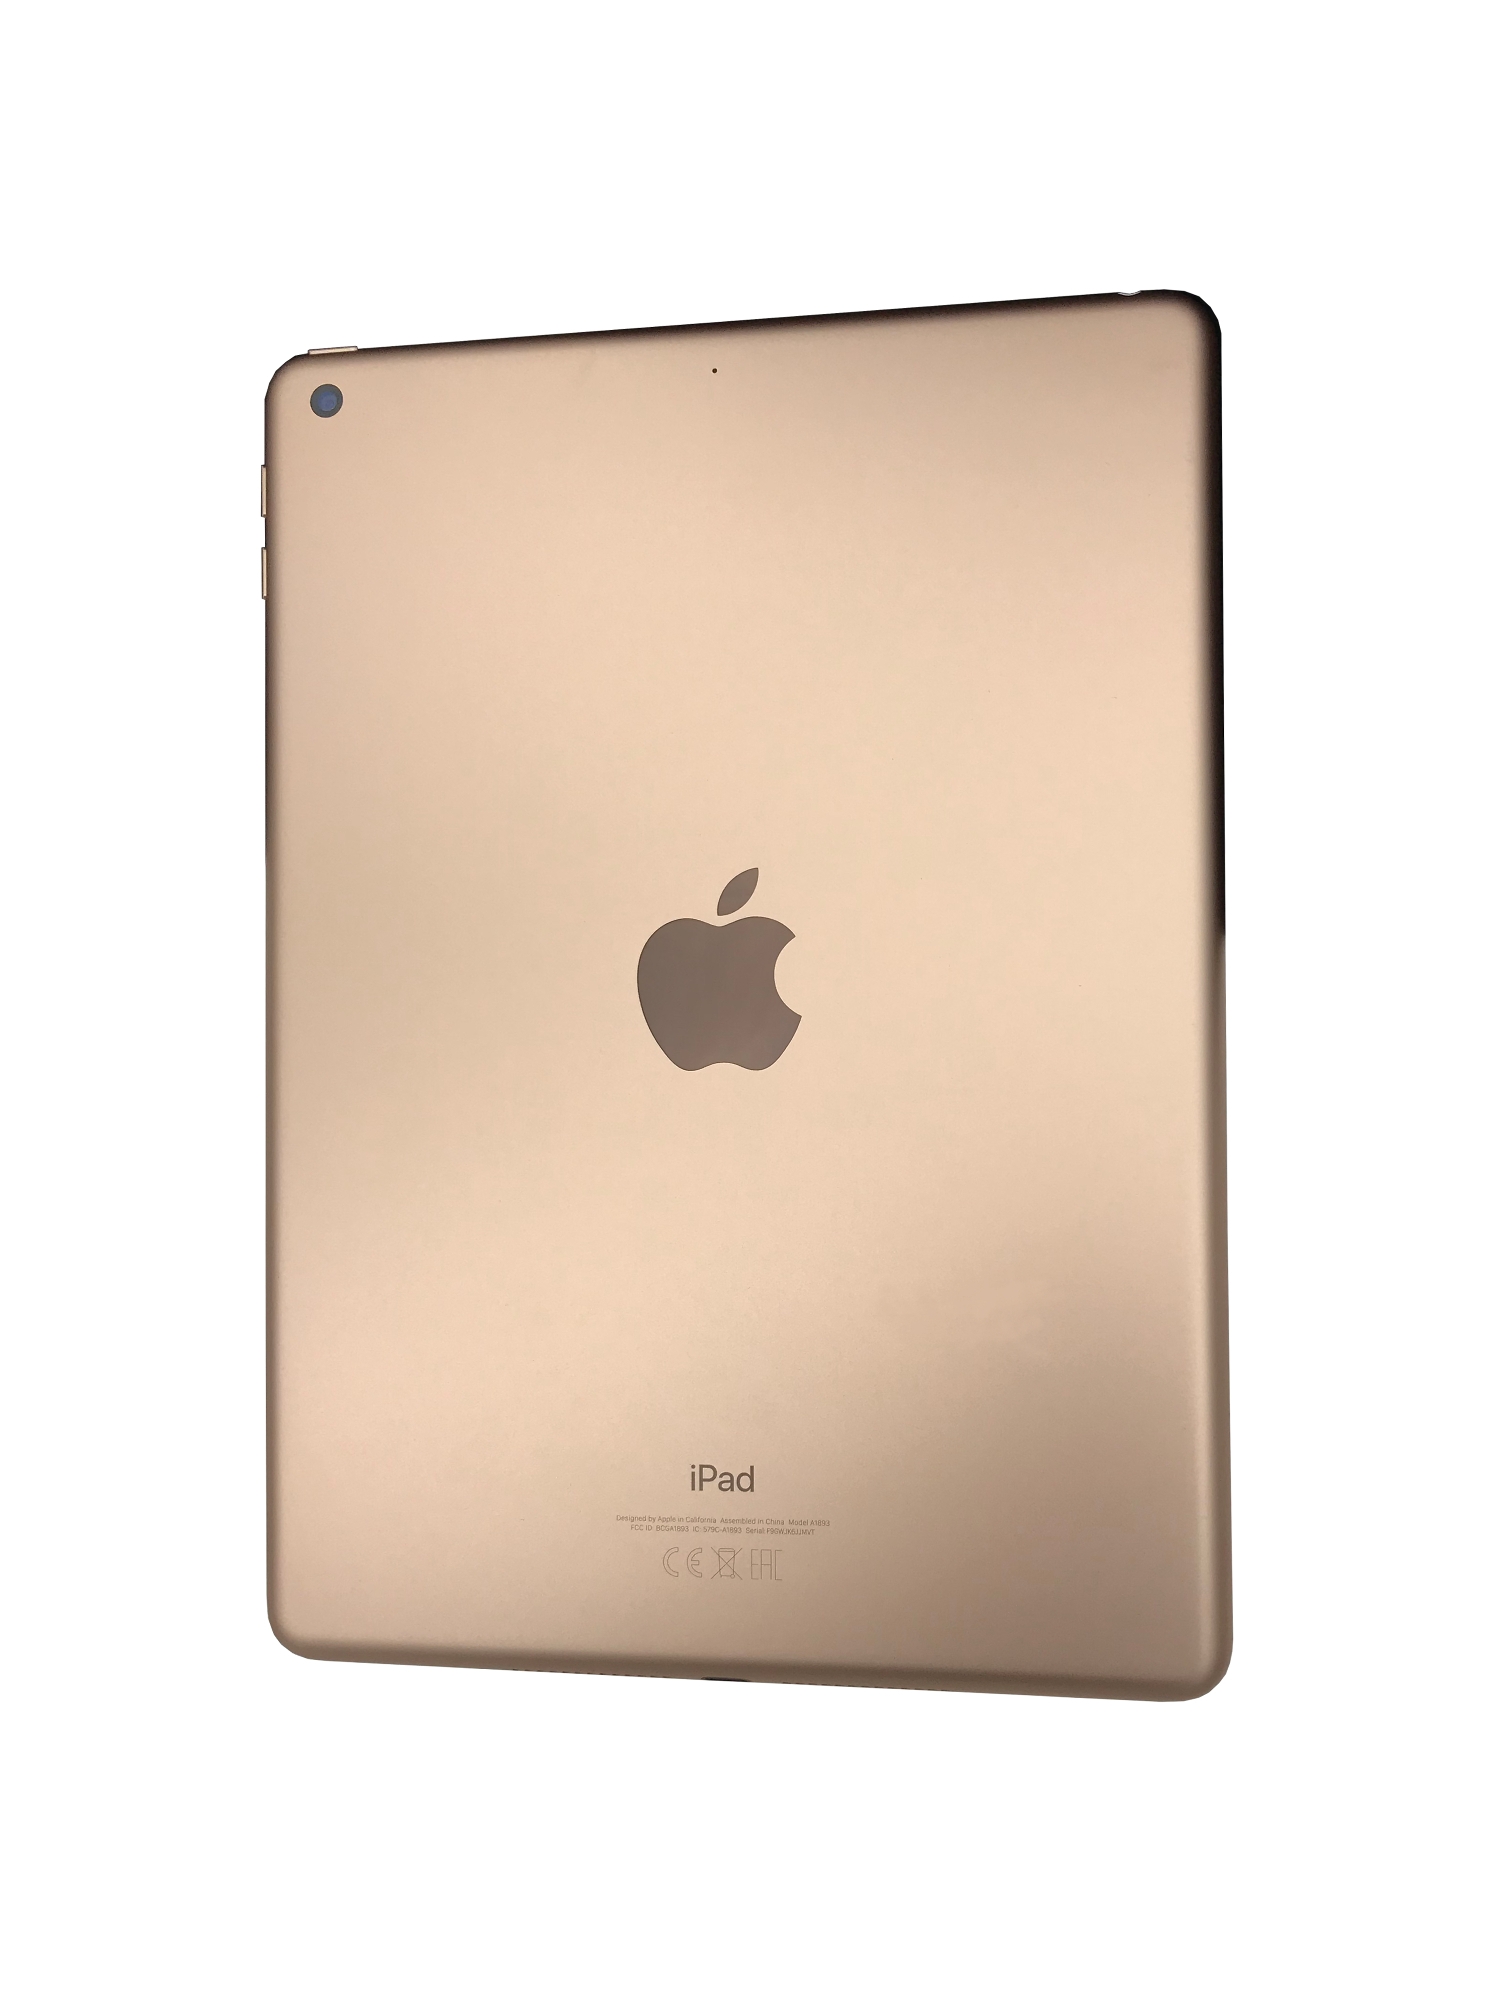 iPad 2019, 128 GB Wi-Fi, Gold , MW792FD/A